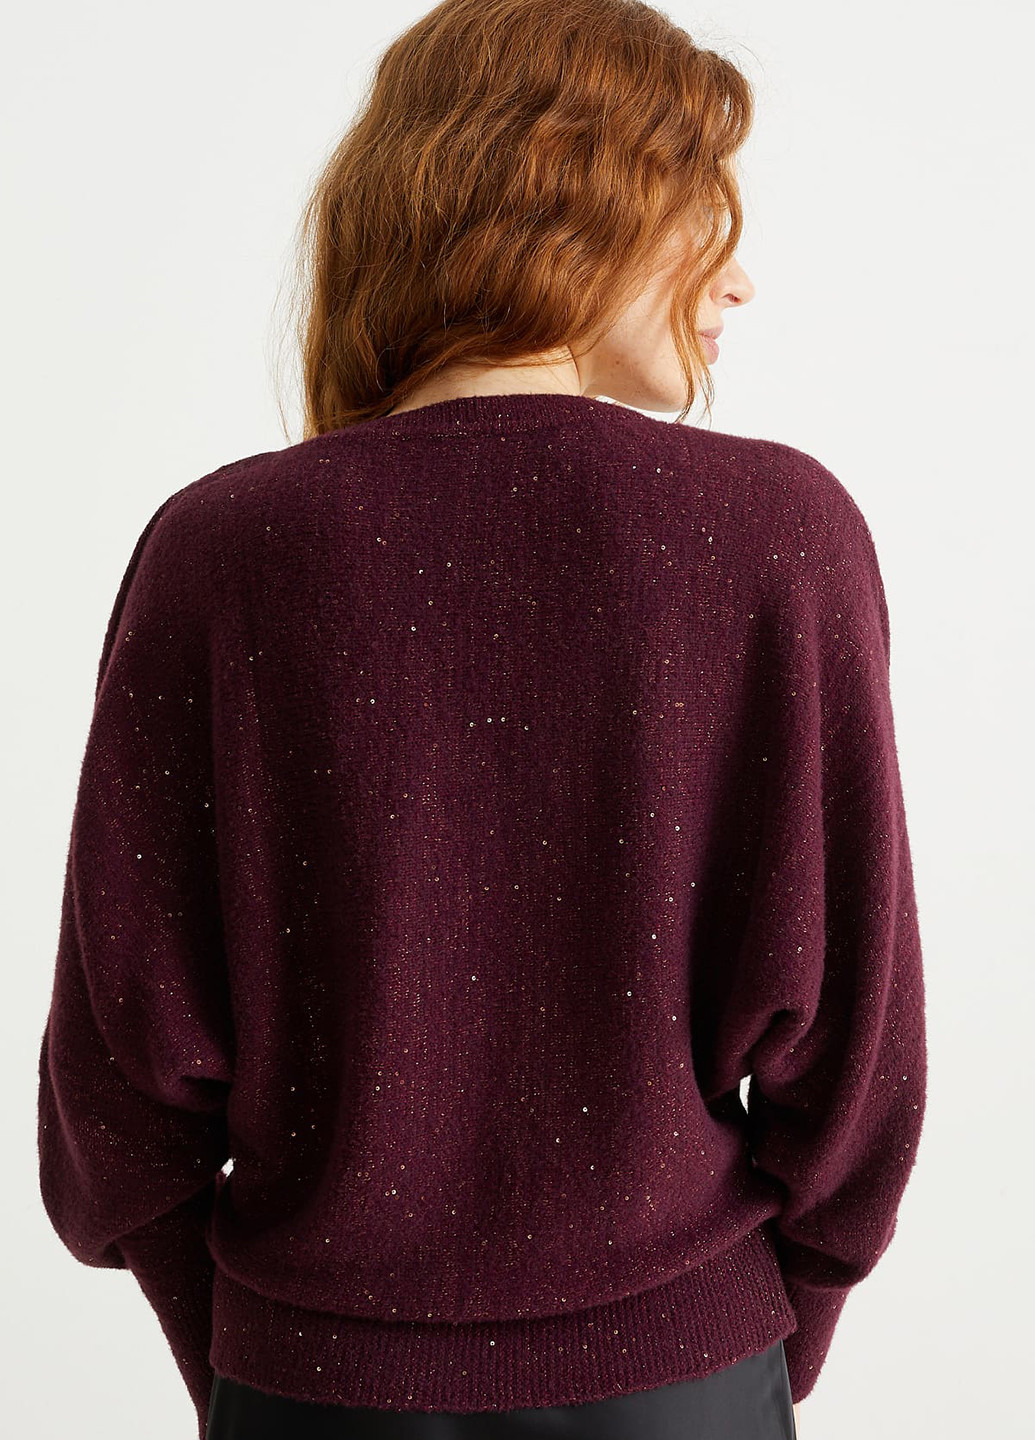 Бордовый демисезонный пуловер пуловер C&A